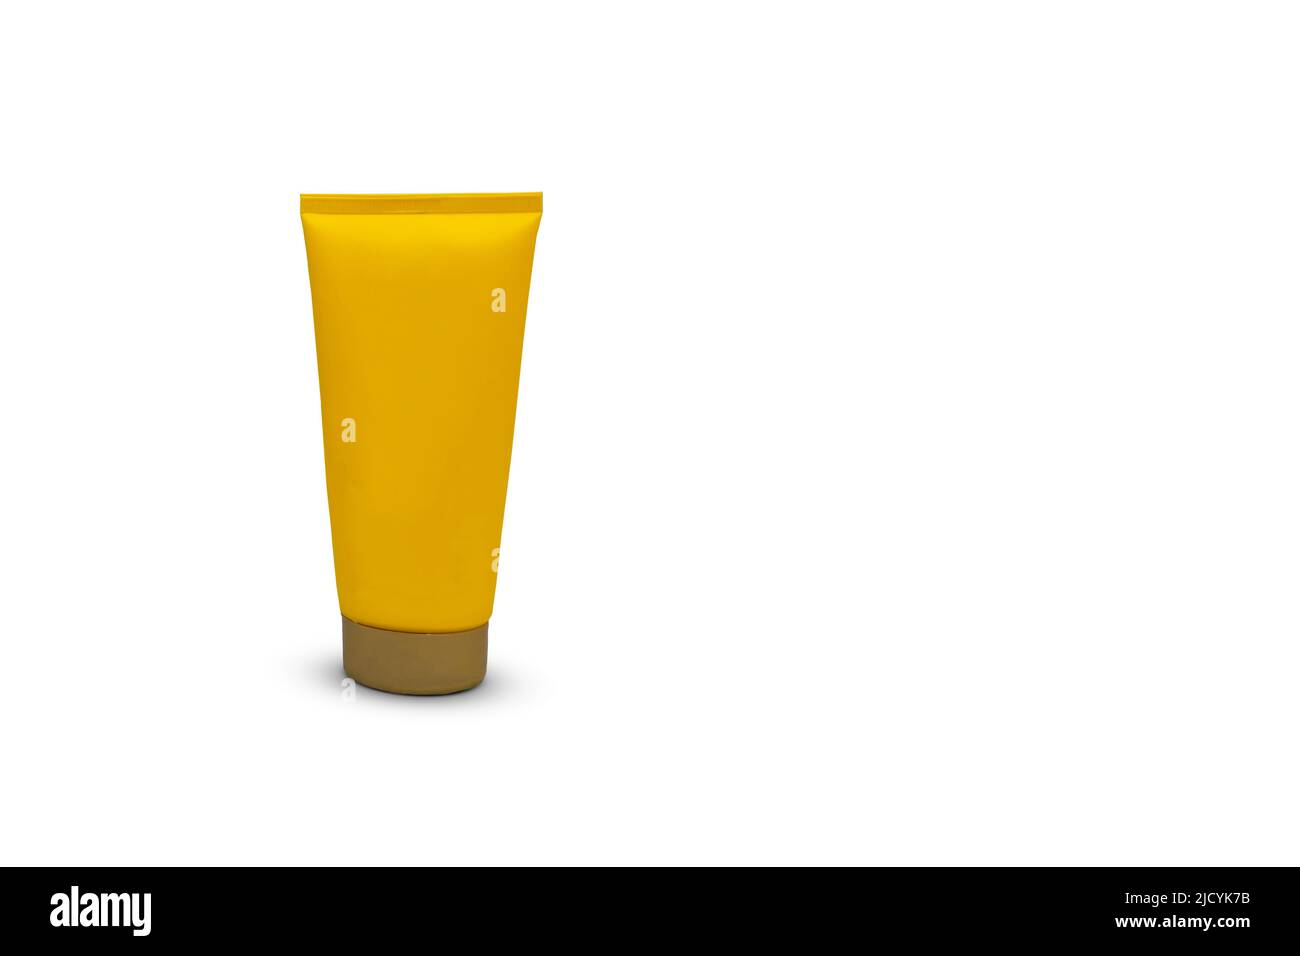 Confezione in tubo giallo per crema solare, cosmetica e per la cura del corpo isolata su sfondo bianco. Tubo idratante senza marchio. Foto Stock